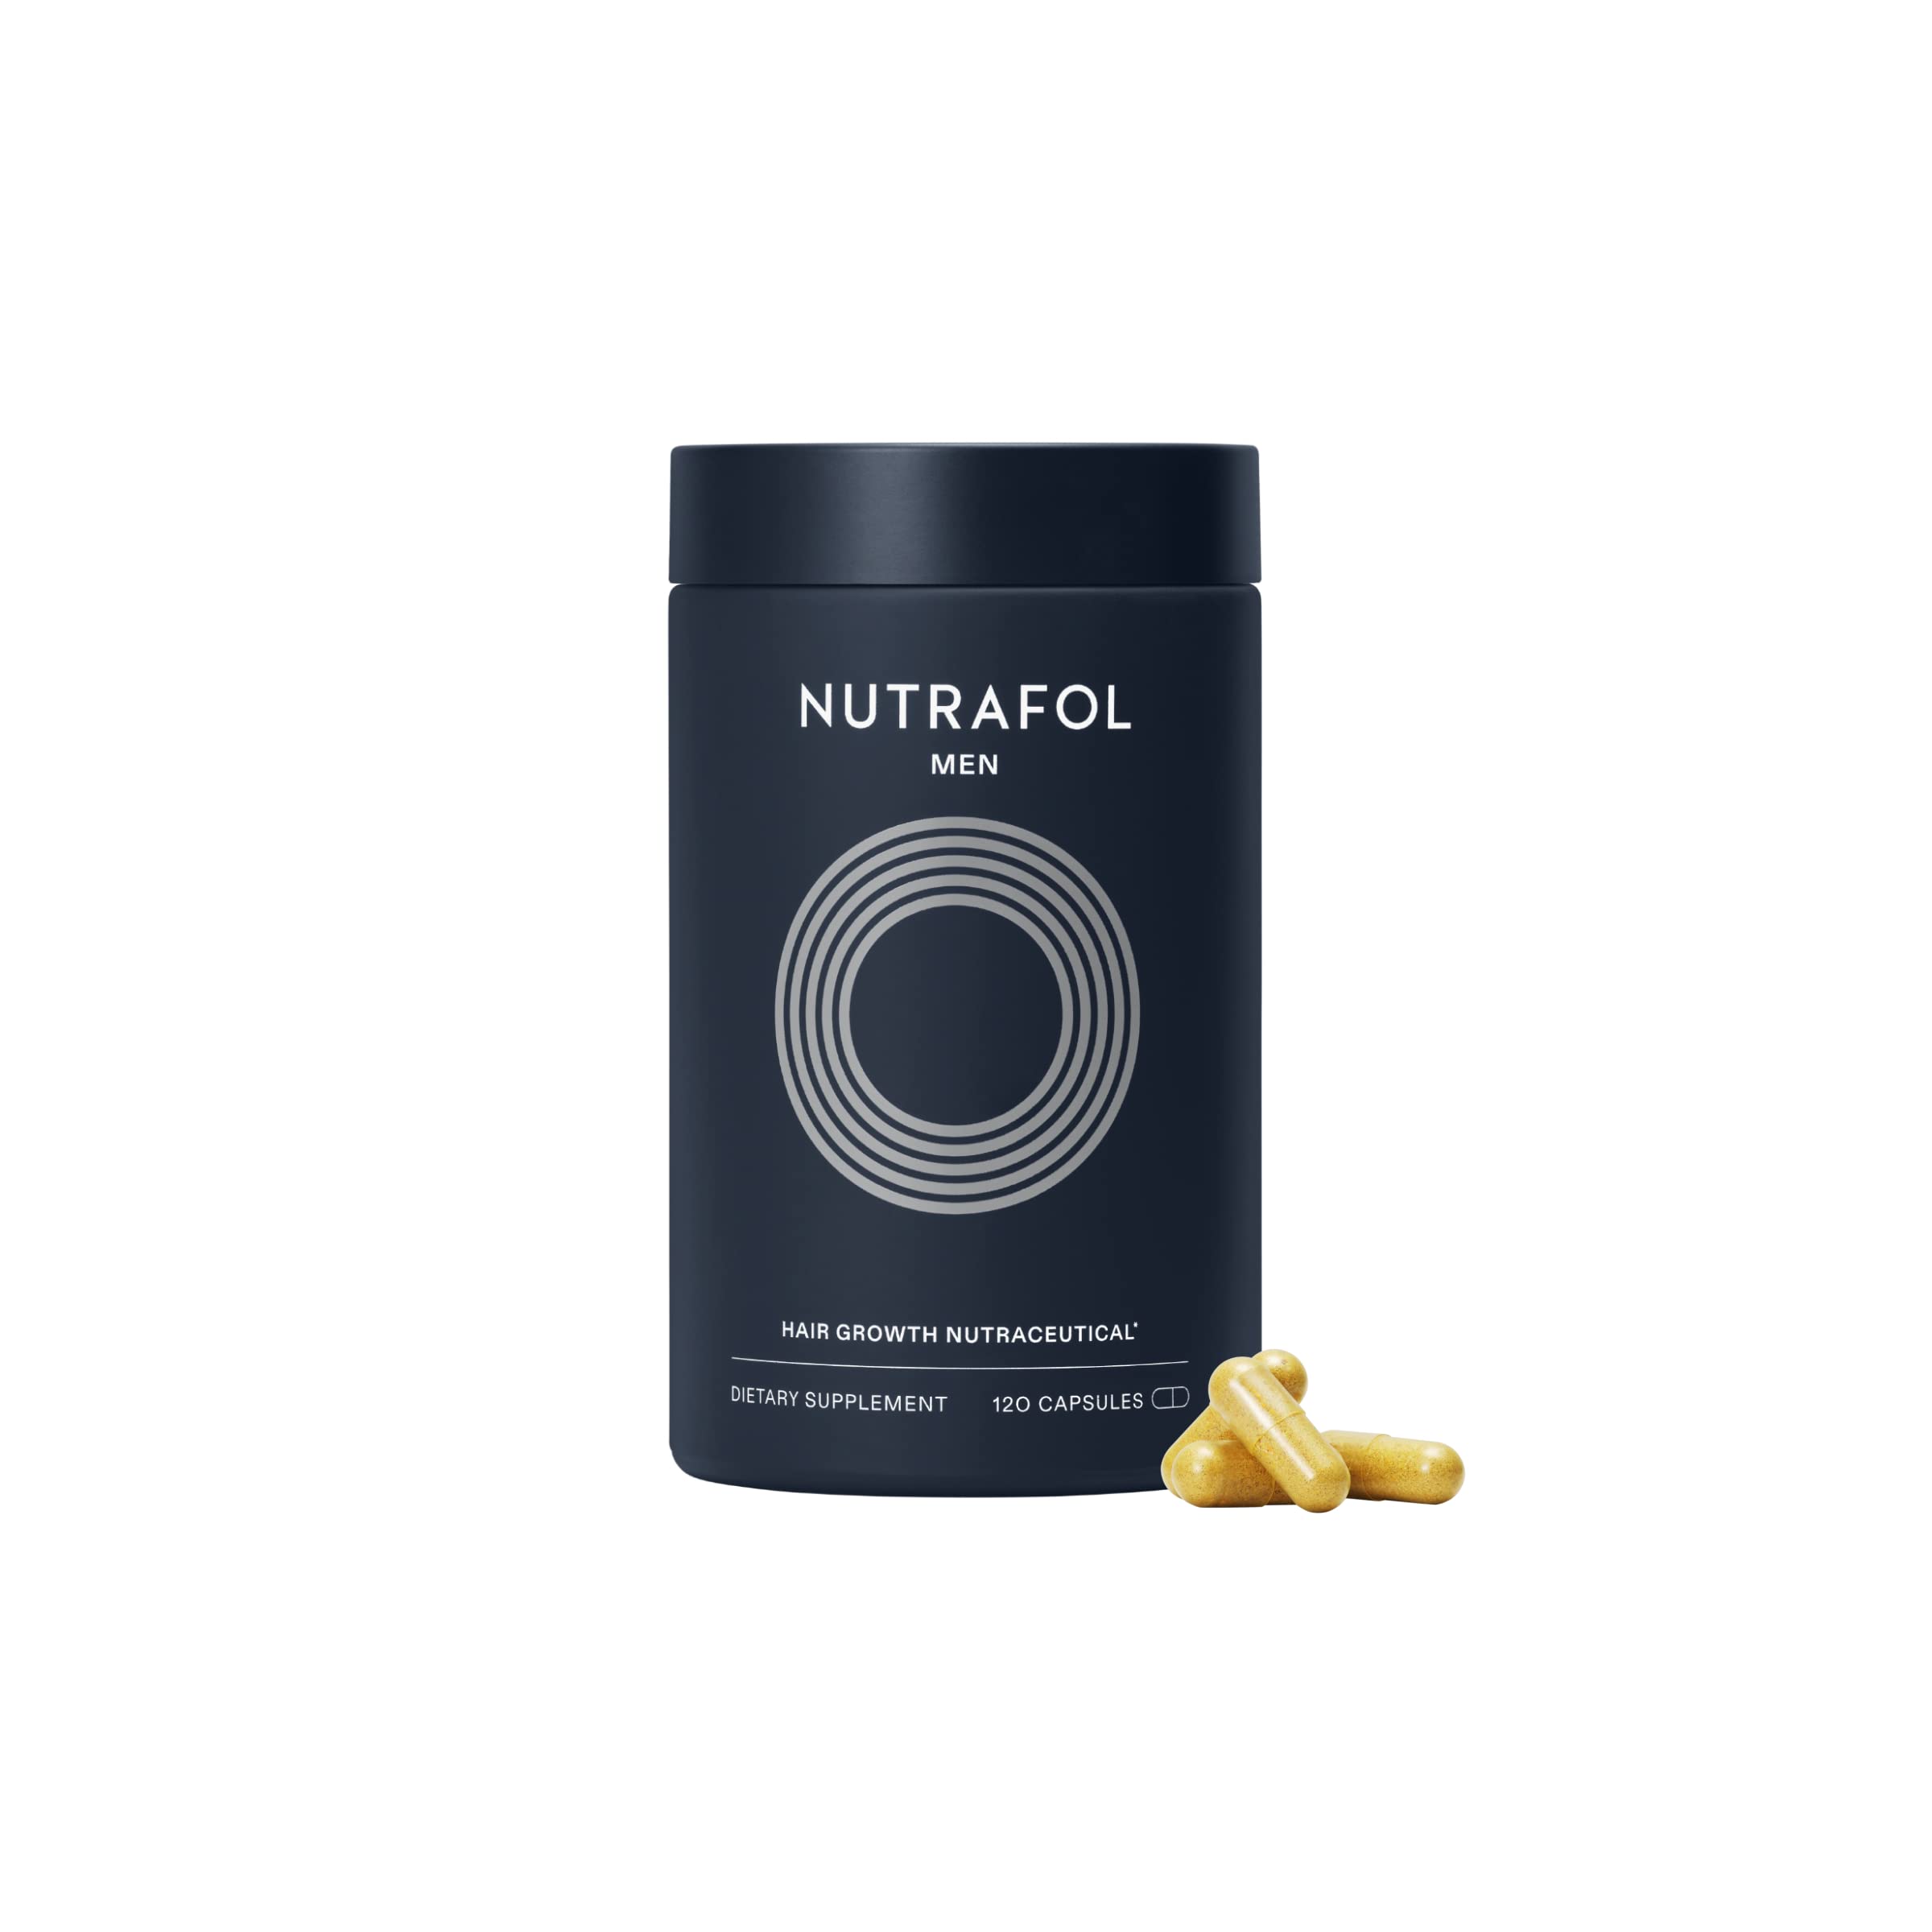  Nutrafol Suplemento para el crecimiento del cabello para hombres | Clínicamente eficaz para cabello visiblemente más grueso y fuerte con más cobertura del cuero cabelludo | Recomendado por dermat...